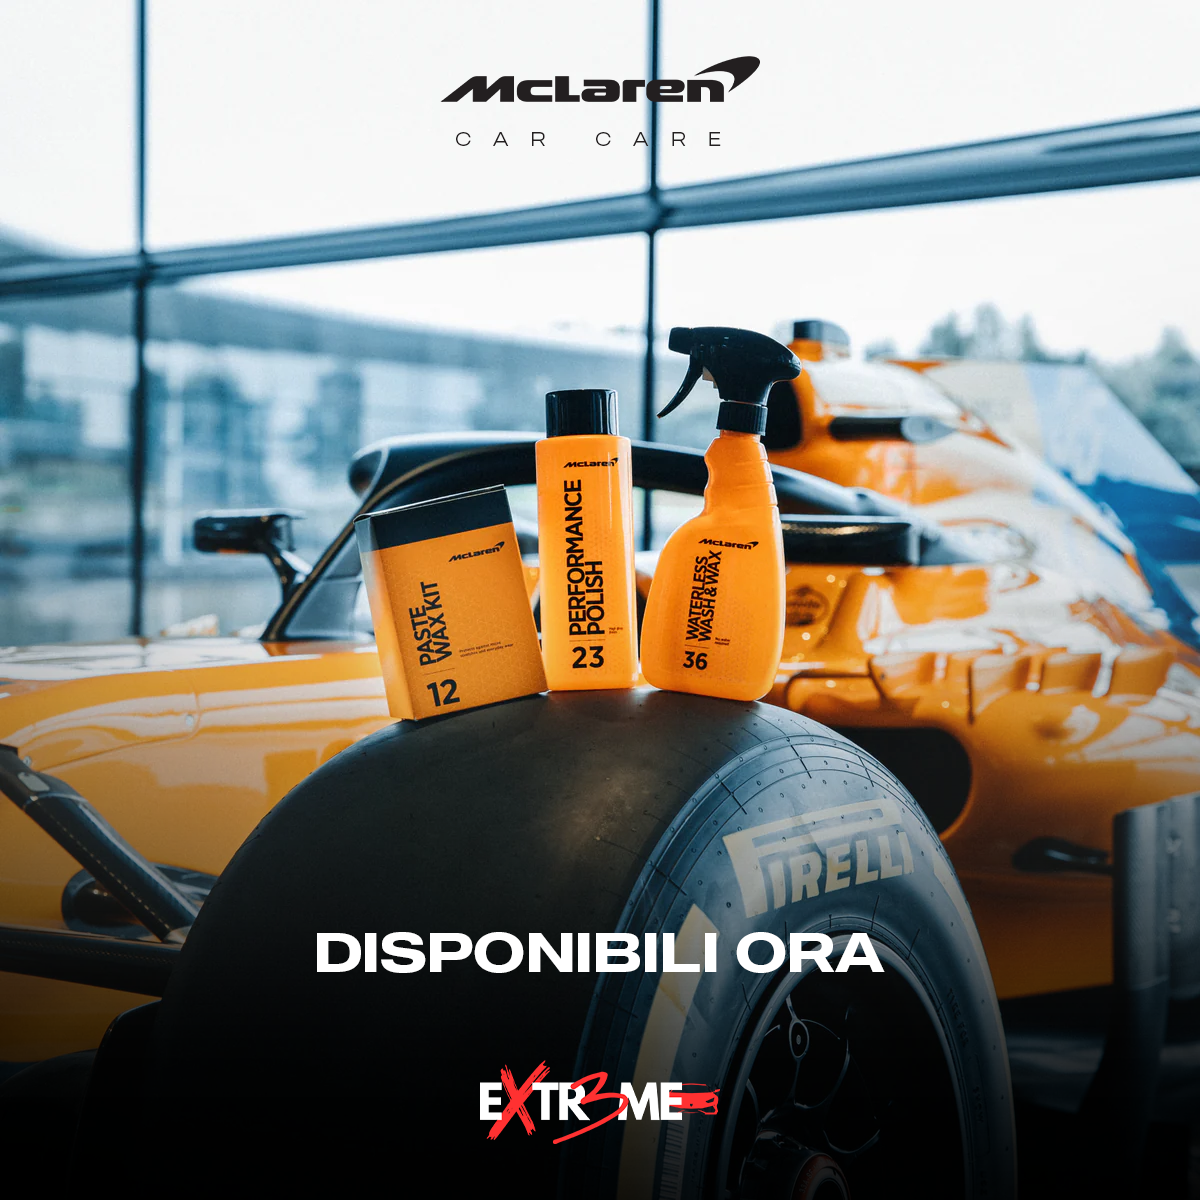 McLaren - Pacchetto Premium - Cura dell'auto